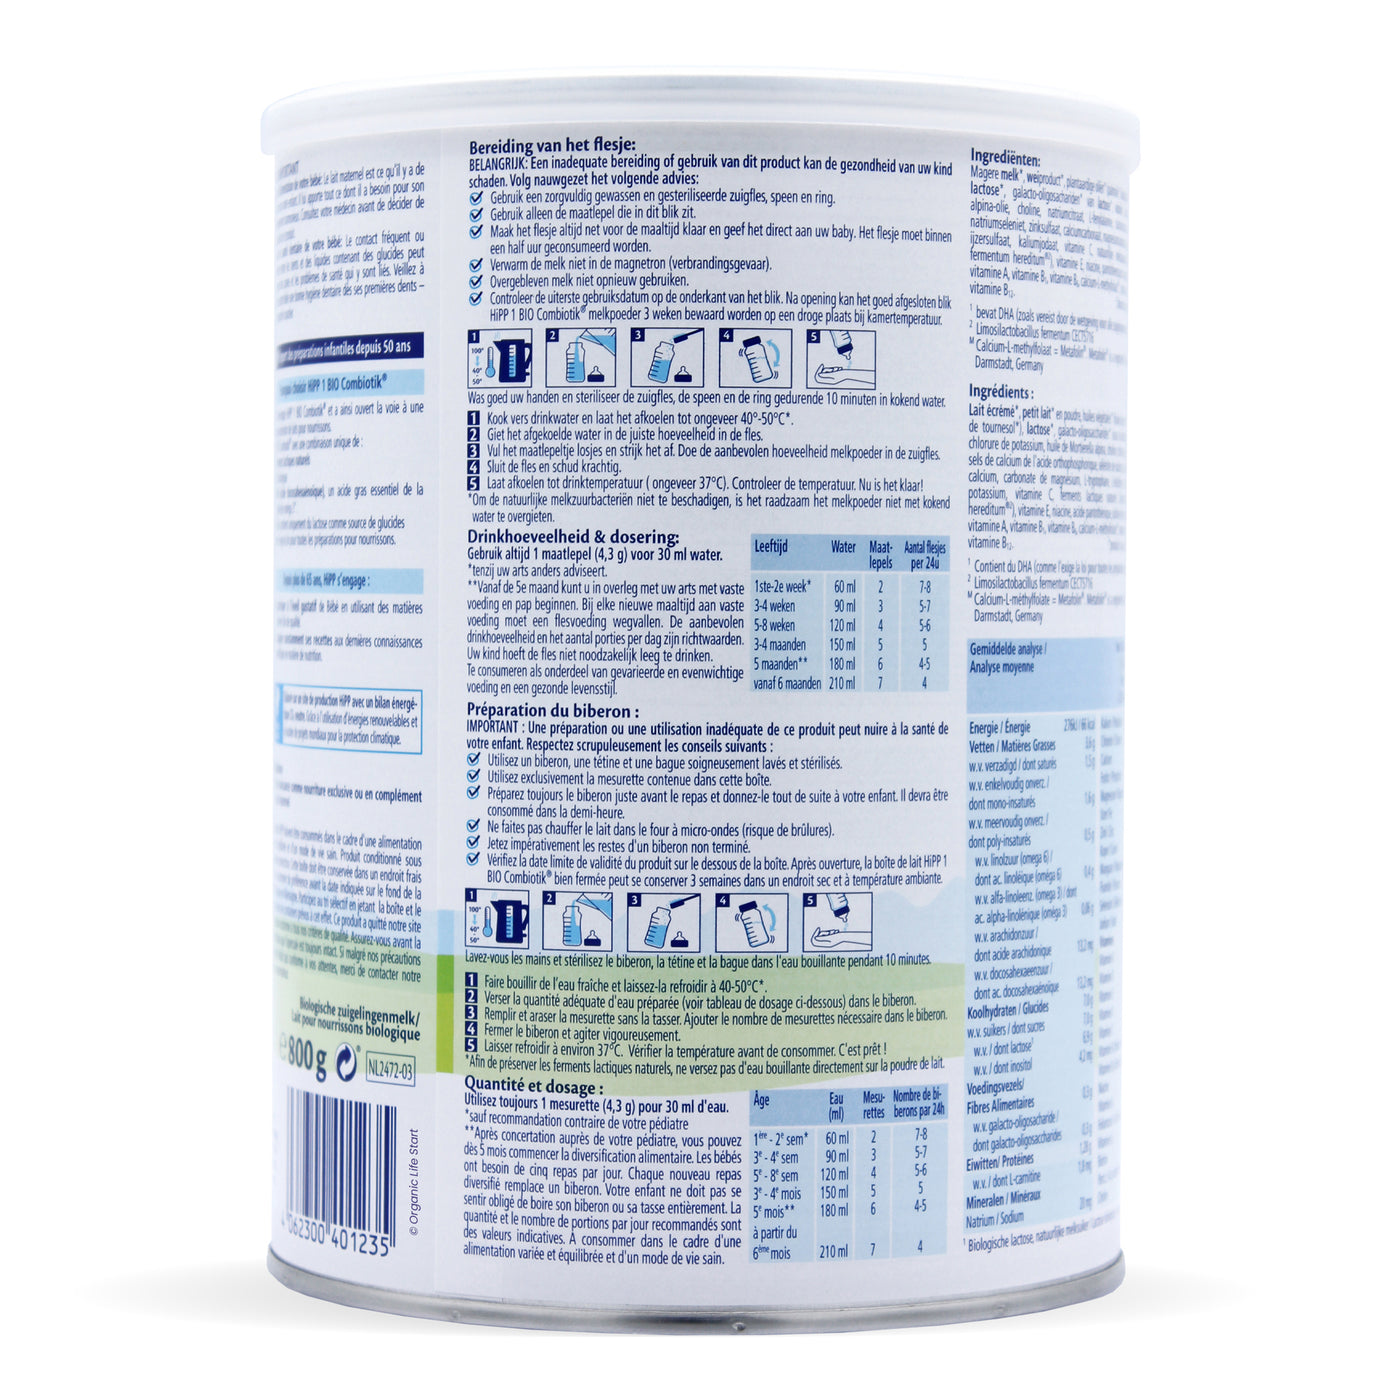 HiPP 1 Combiotic 800 g 